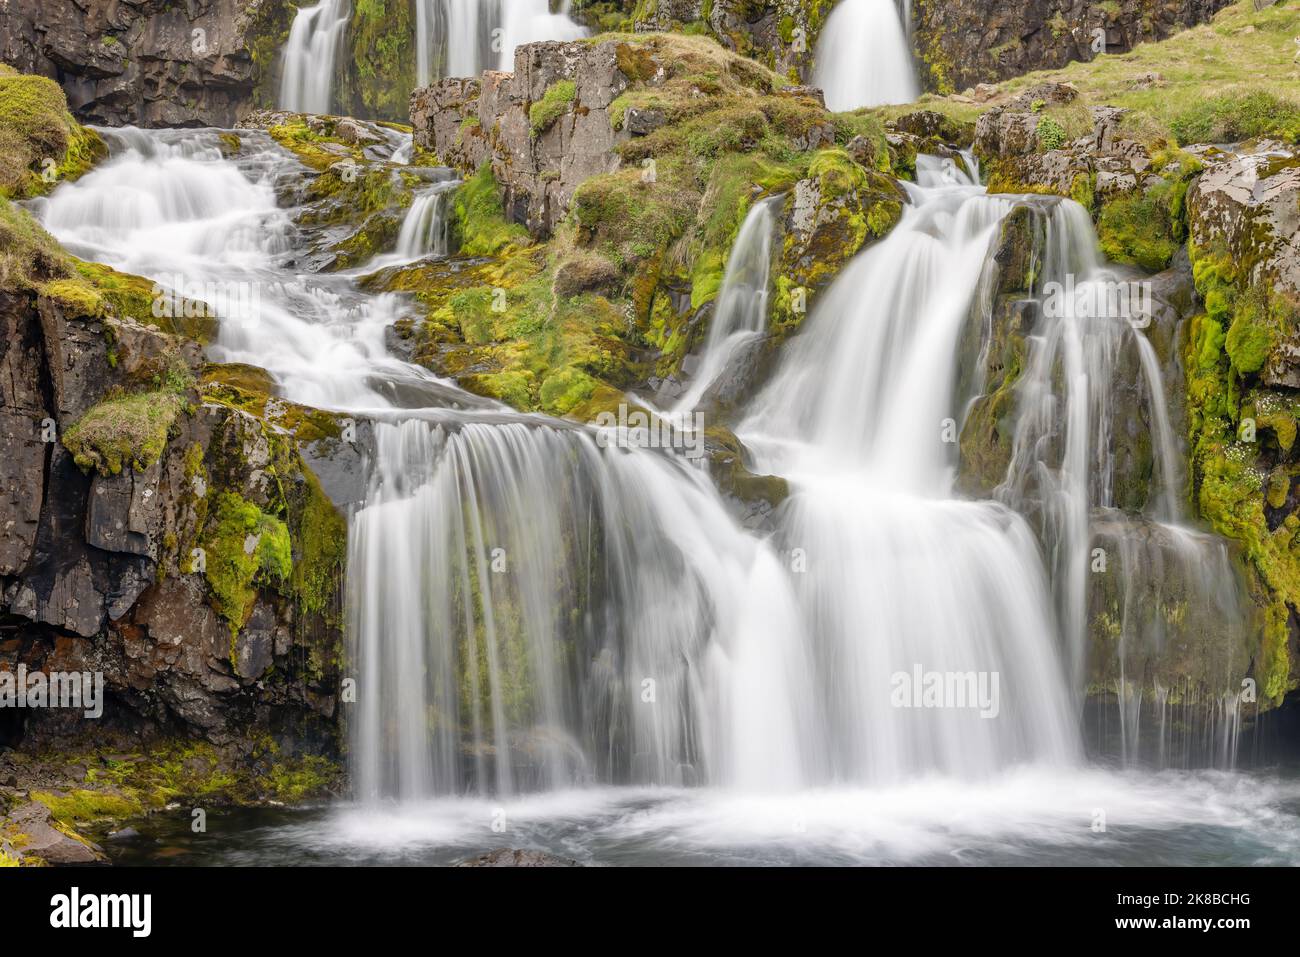 Admirez les cascades de Kirkjufellsfoss, célèbre et populaire site touristique d'Islande Banque D'Images